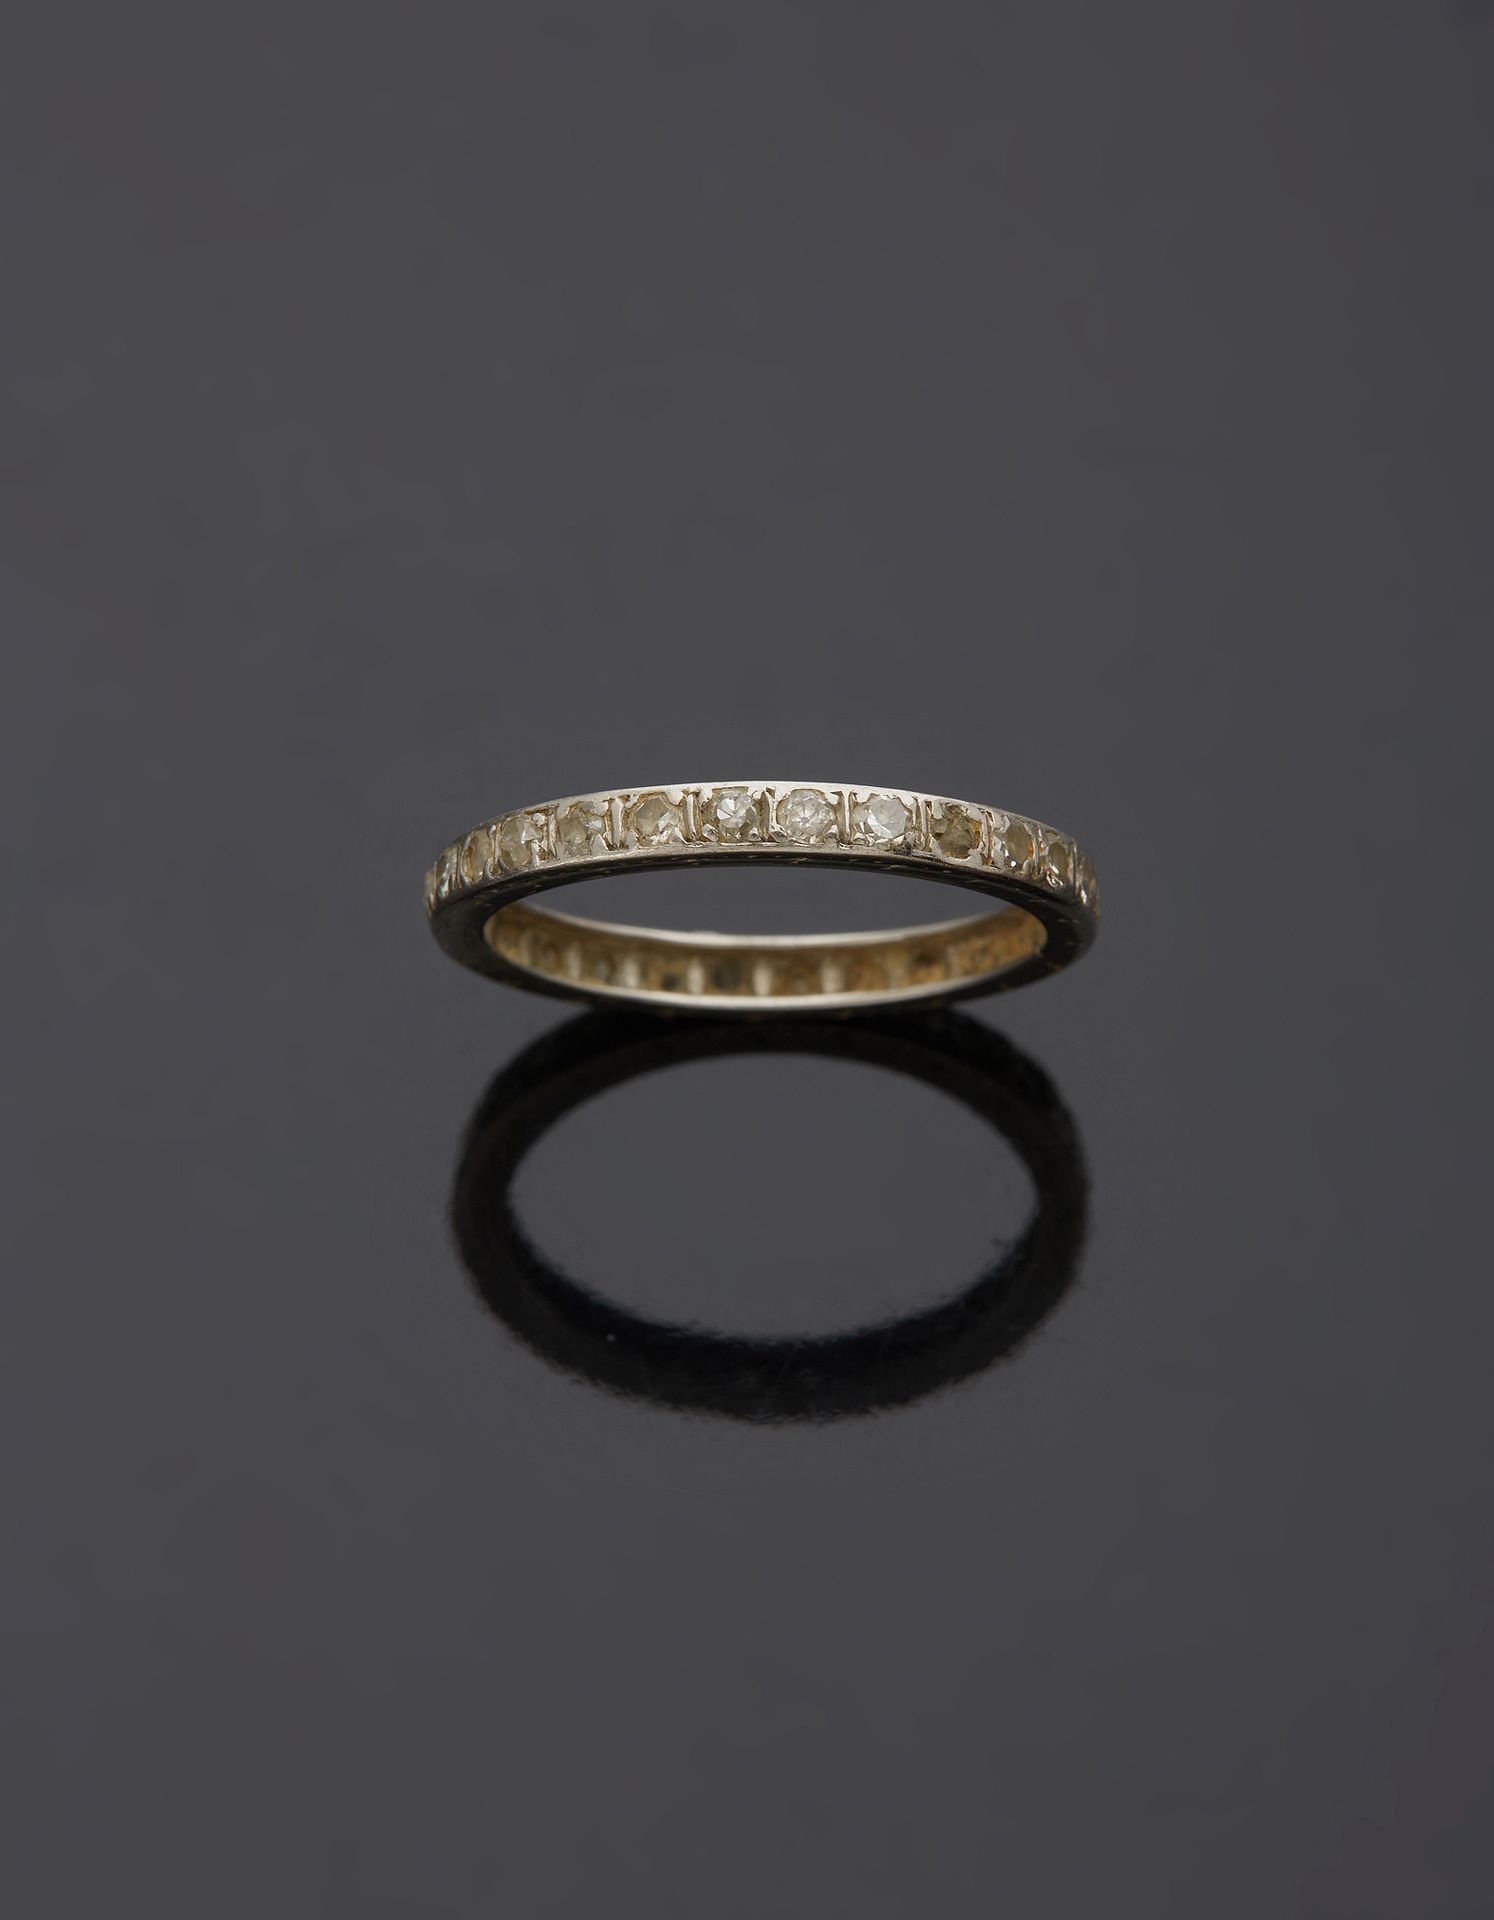 Null 铂金850‰的美国结婚戒指，镶嵌八分之一的钻石和各种钻石，碎石。

手指大小52 毛重2.20克